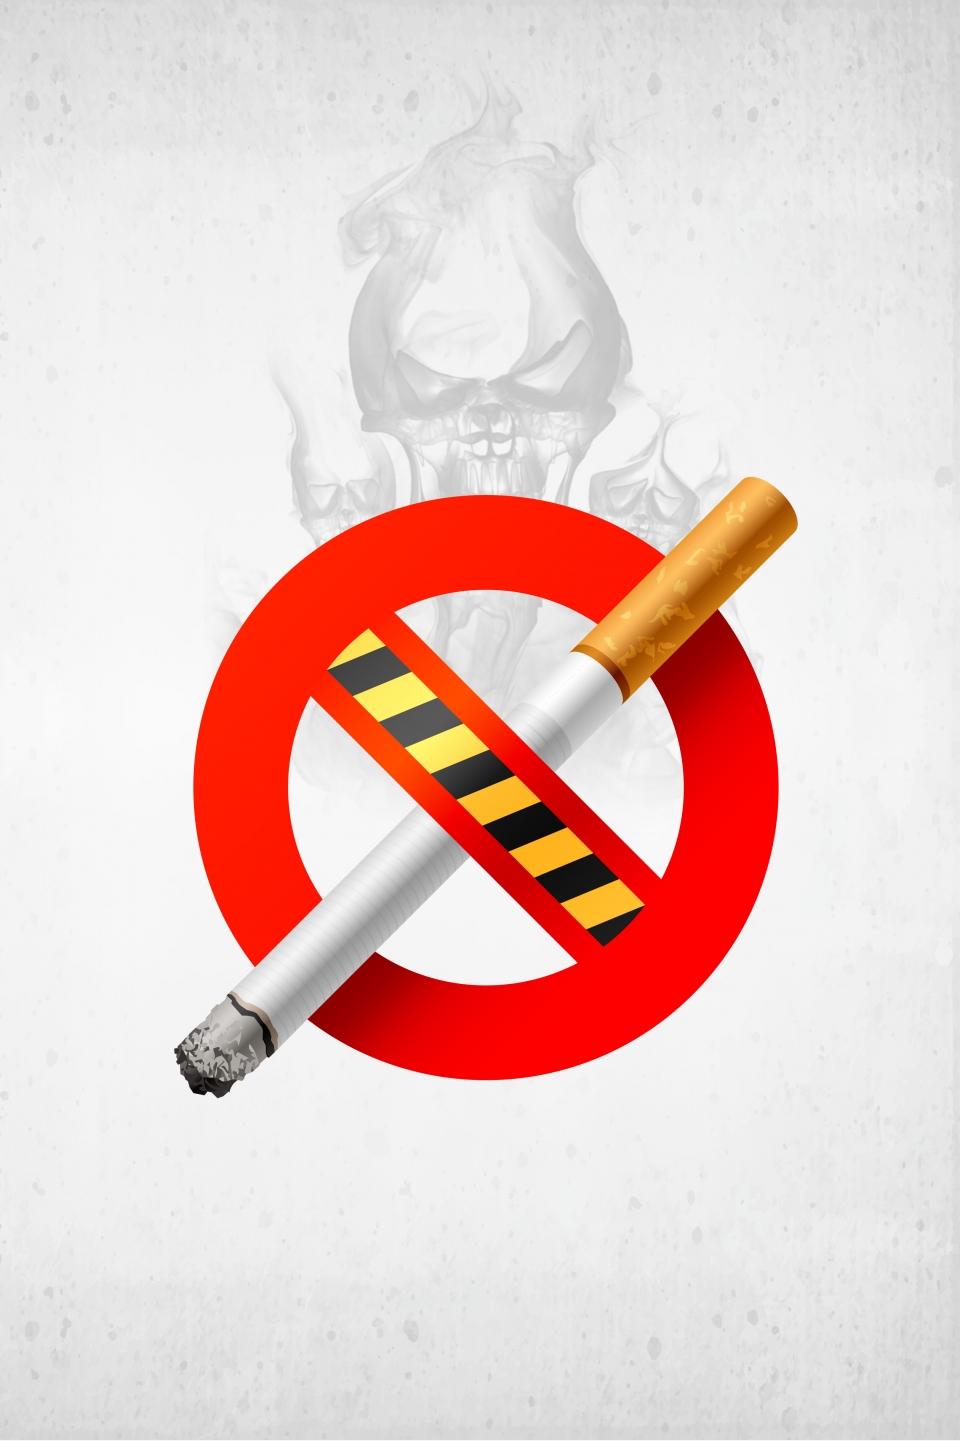 Tác hại và việc cấm các loại thuốc lá của nhà nước